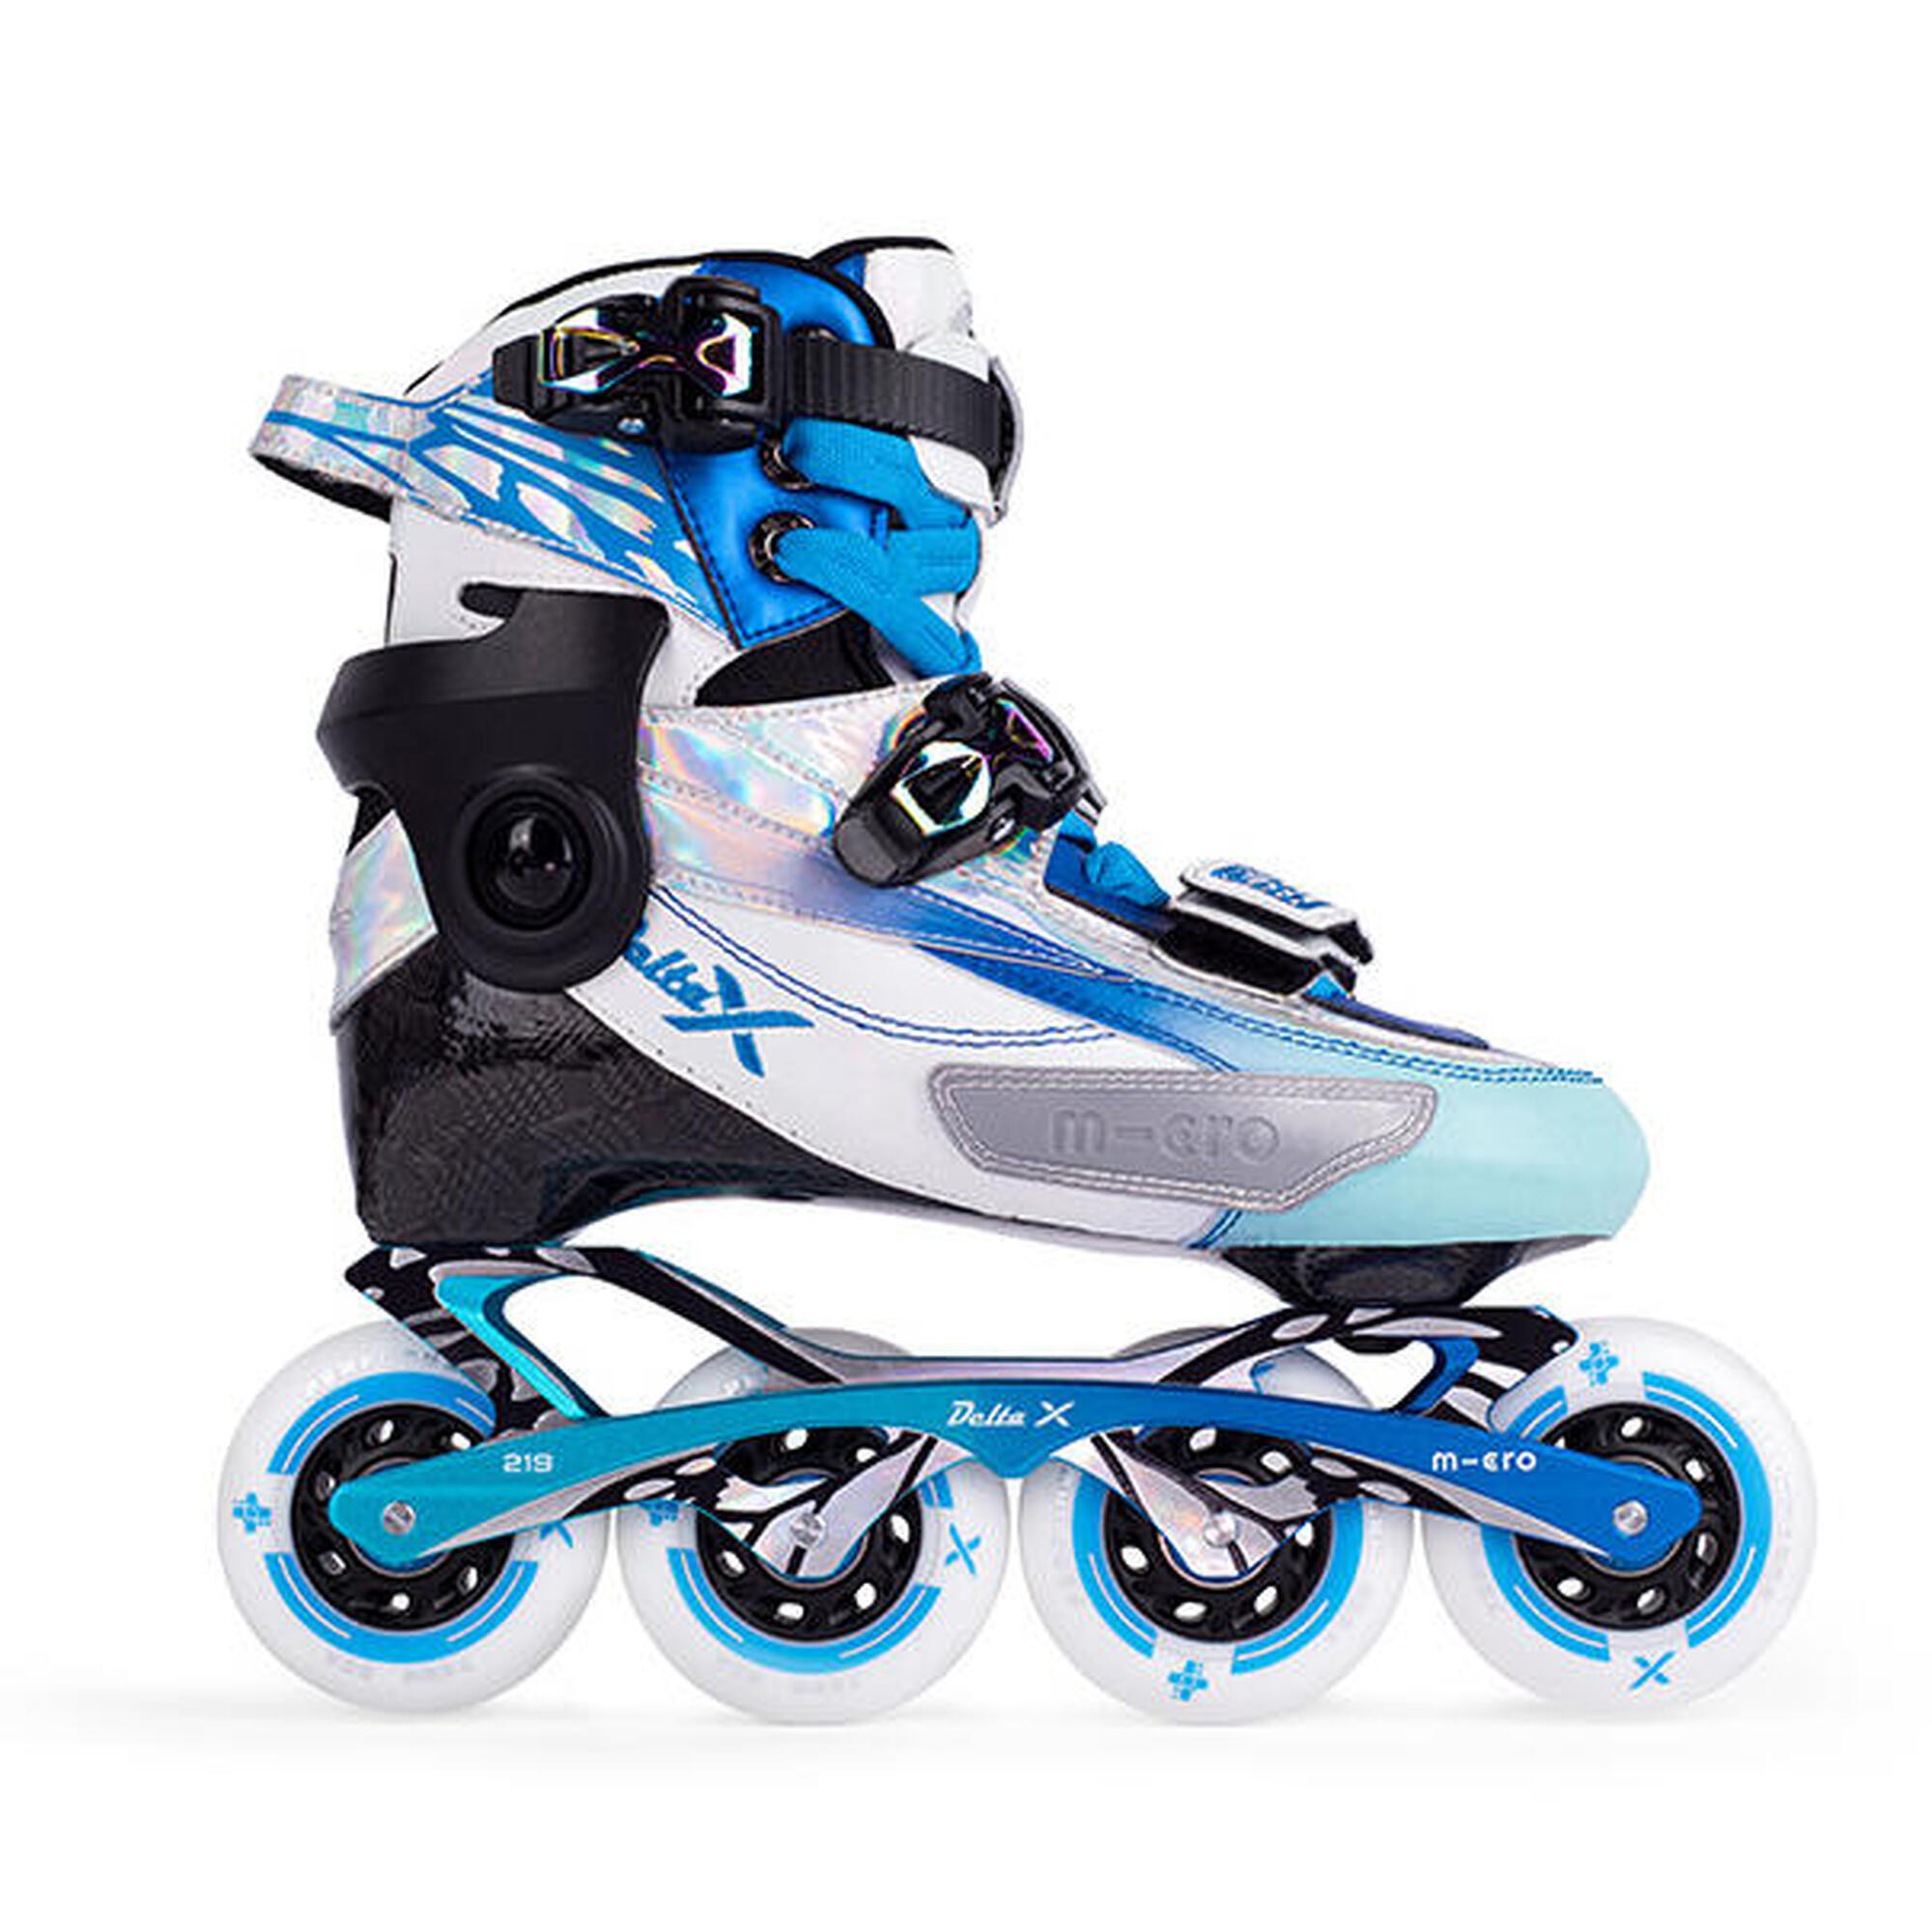 Pattini in linea Freestyle allungabili bambino Micro Skate Delta X Blu